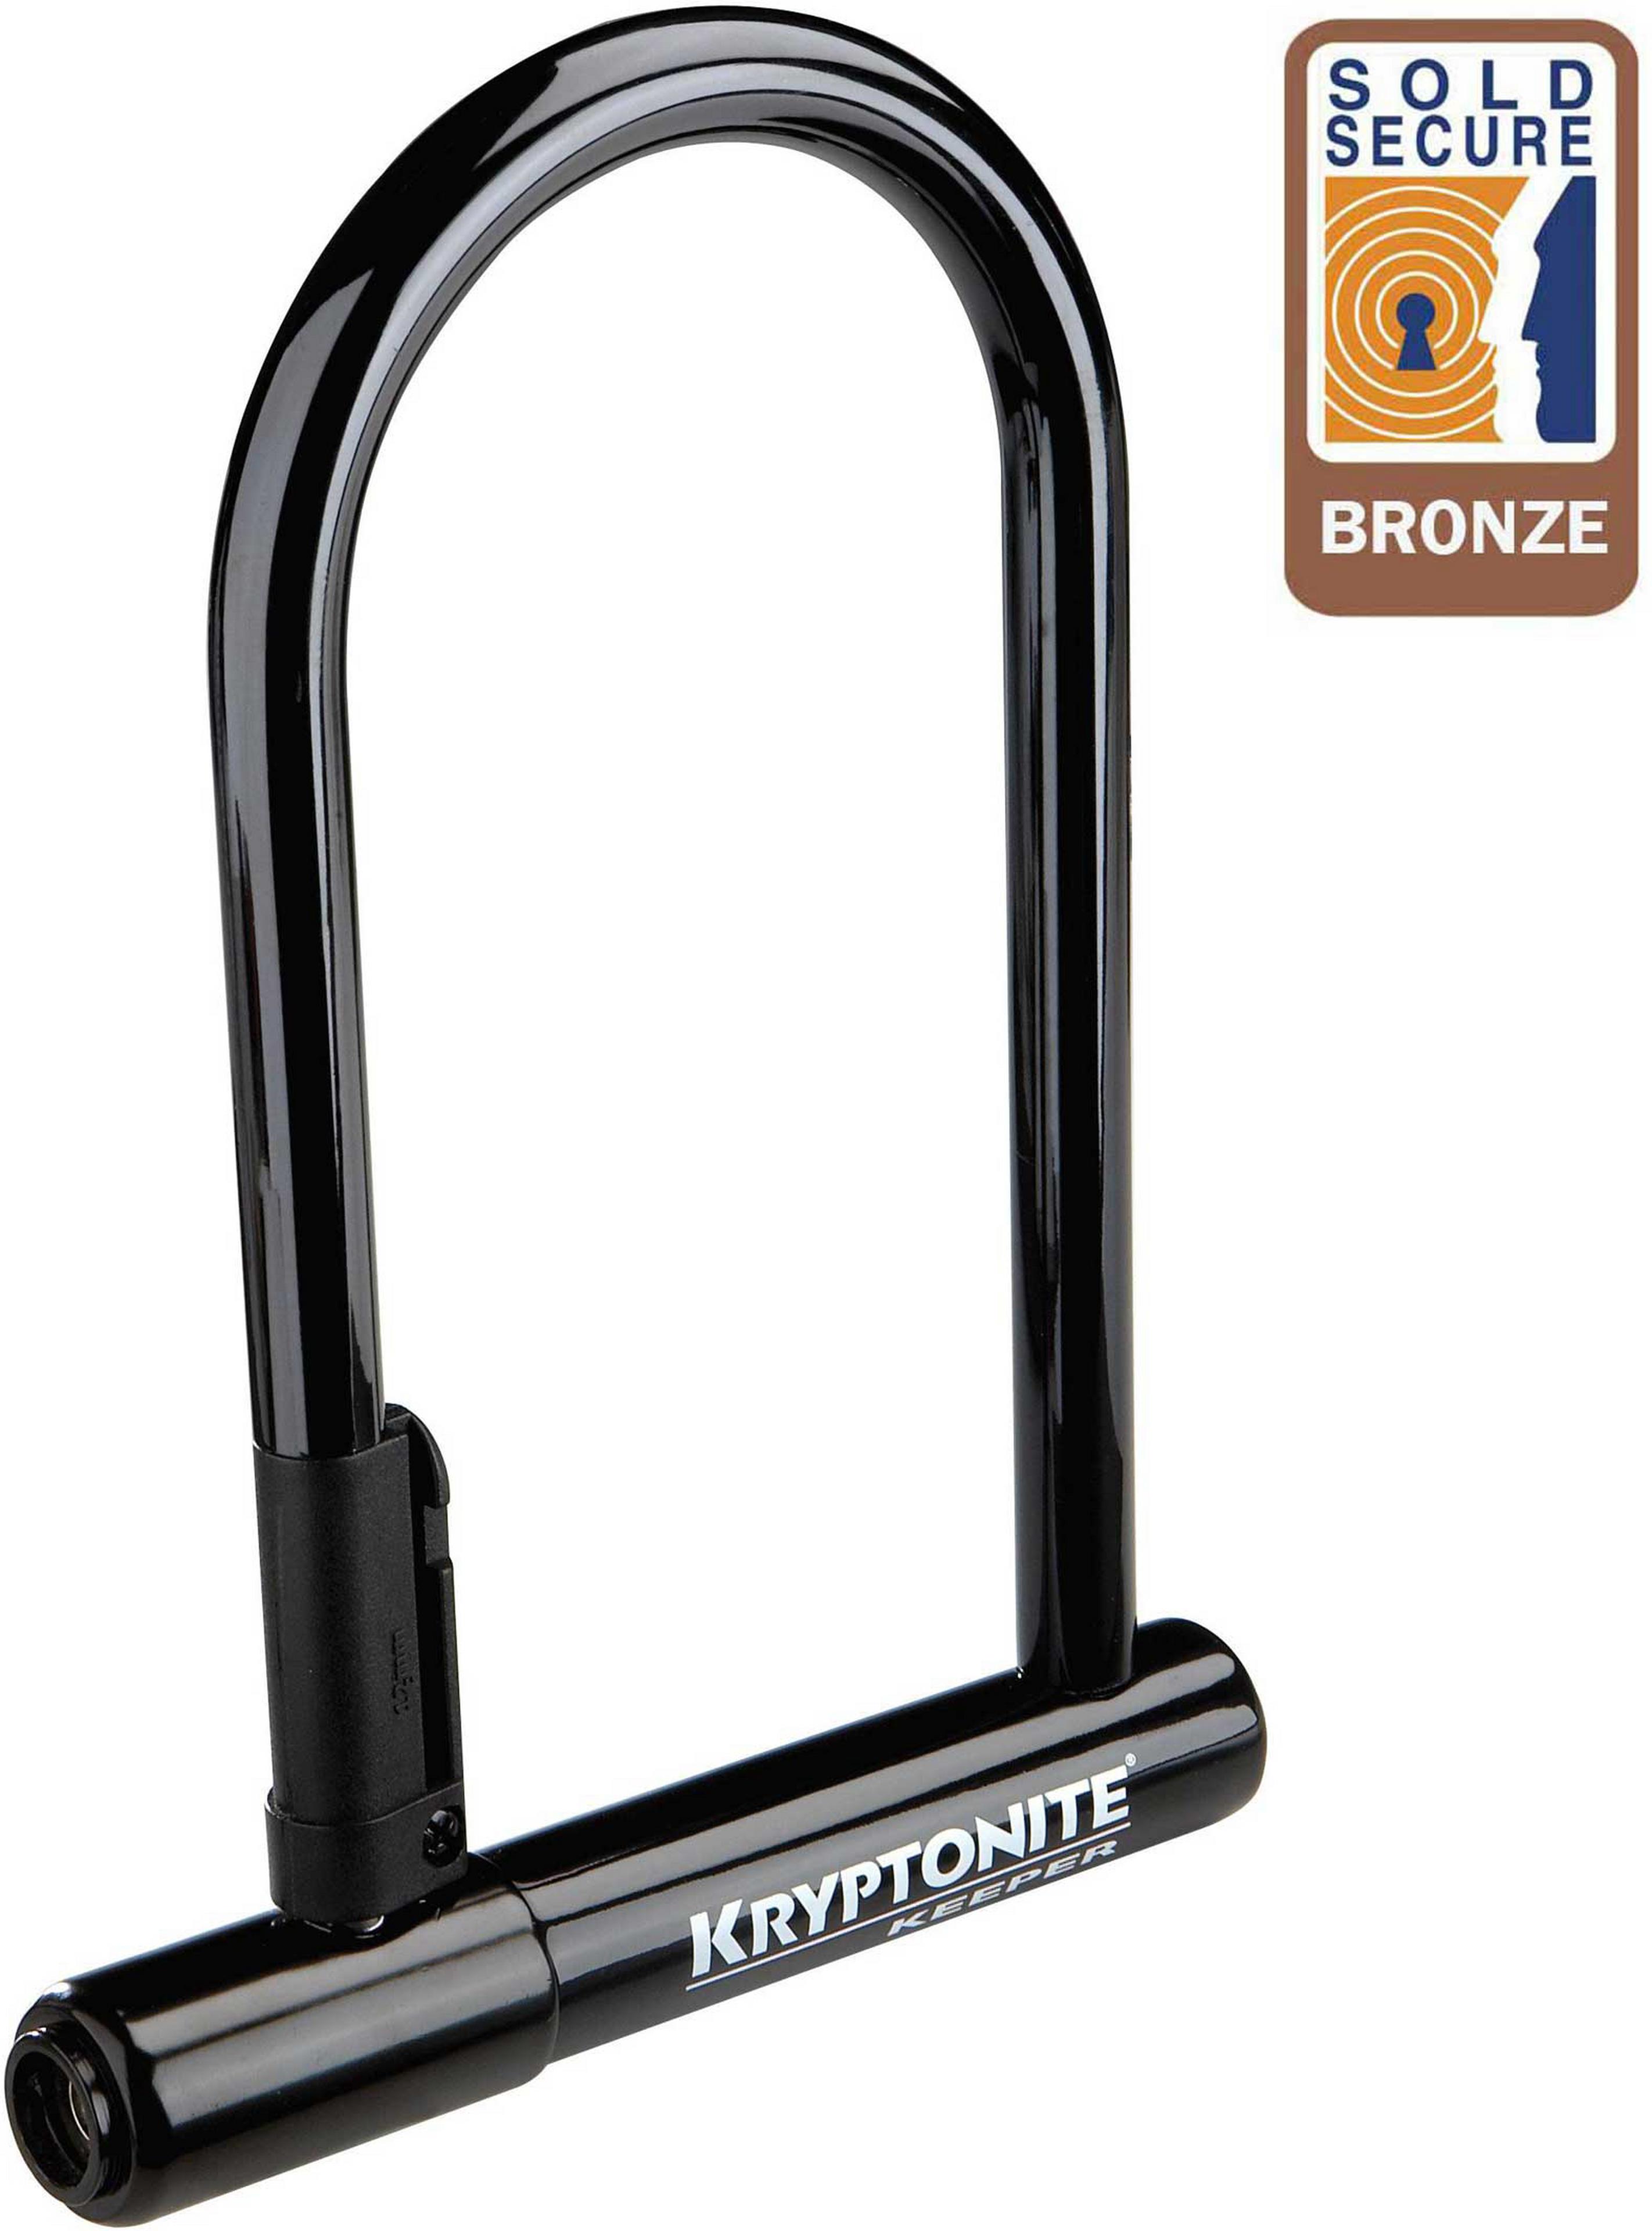 Kryptonite Keeper Original Standard D-Lock - Sold Secure Bronze